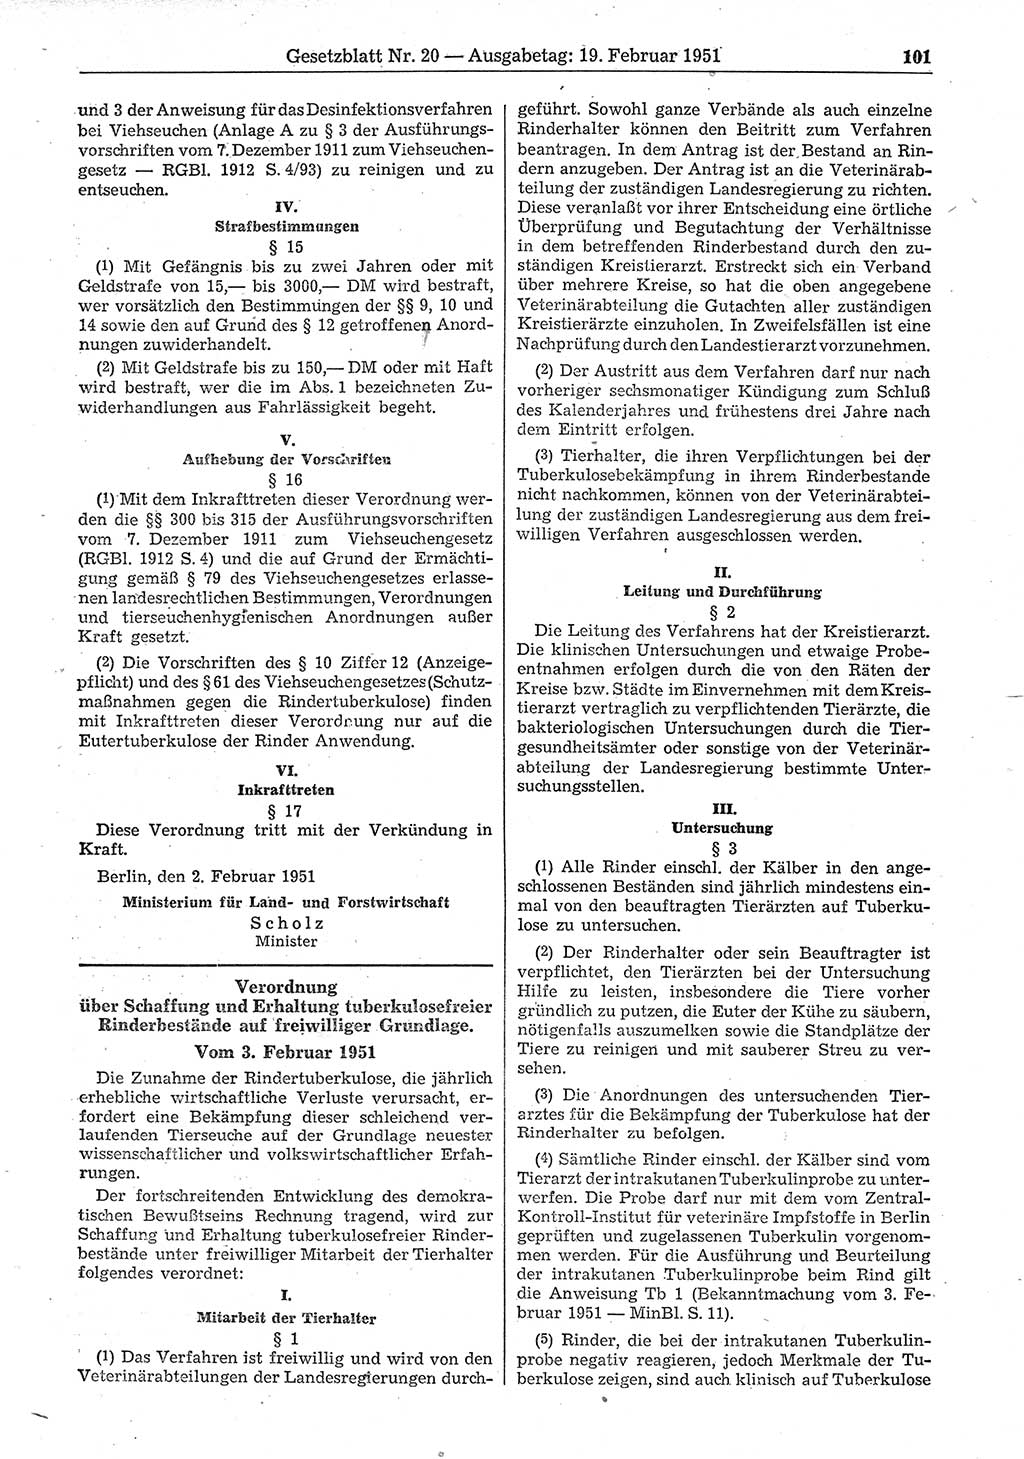 Gesetzblatt (GBl.) der Deutschen Demokratischen Republik (DDR) 1951, Seite 101 (GBl. DDR 1951, S. 101)